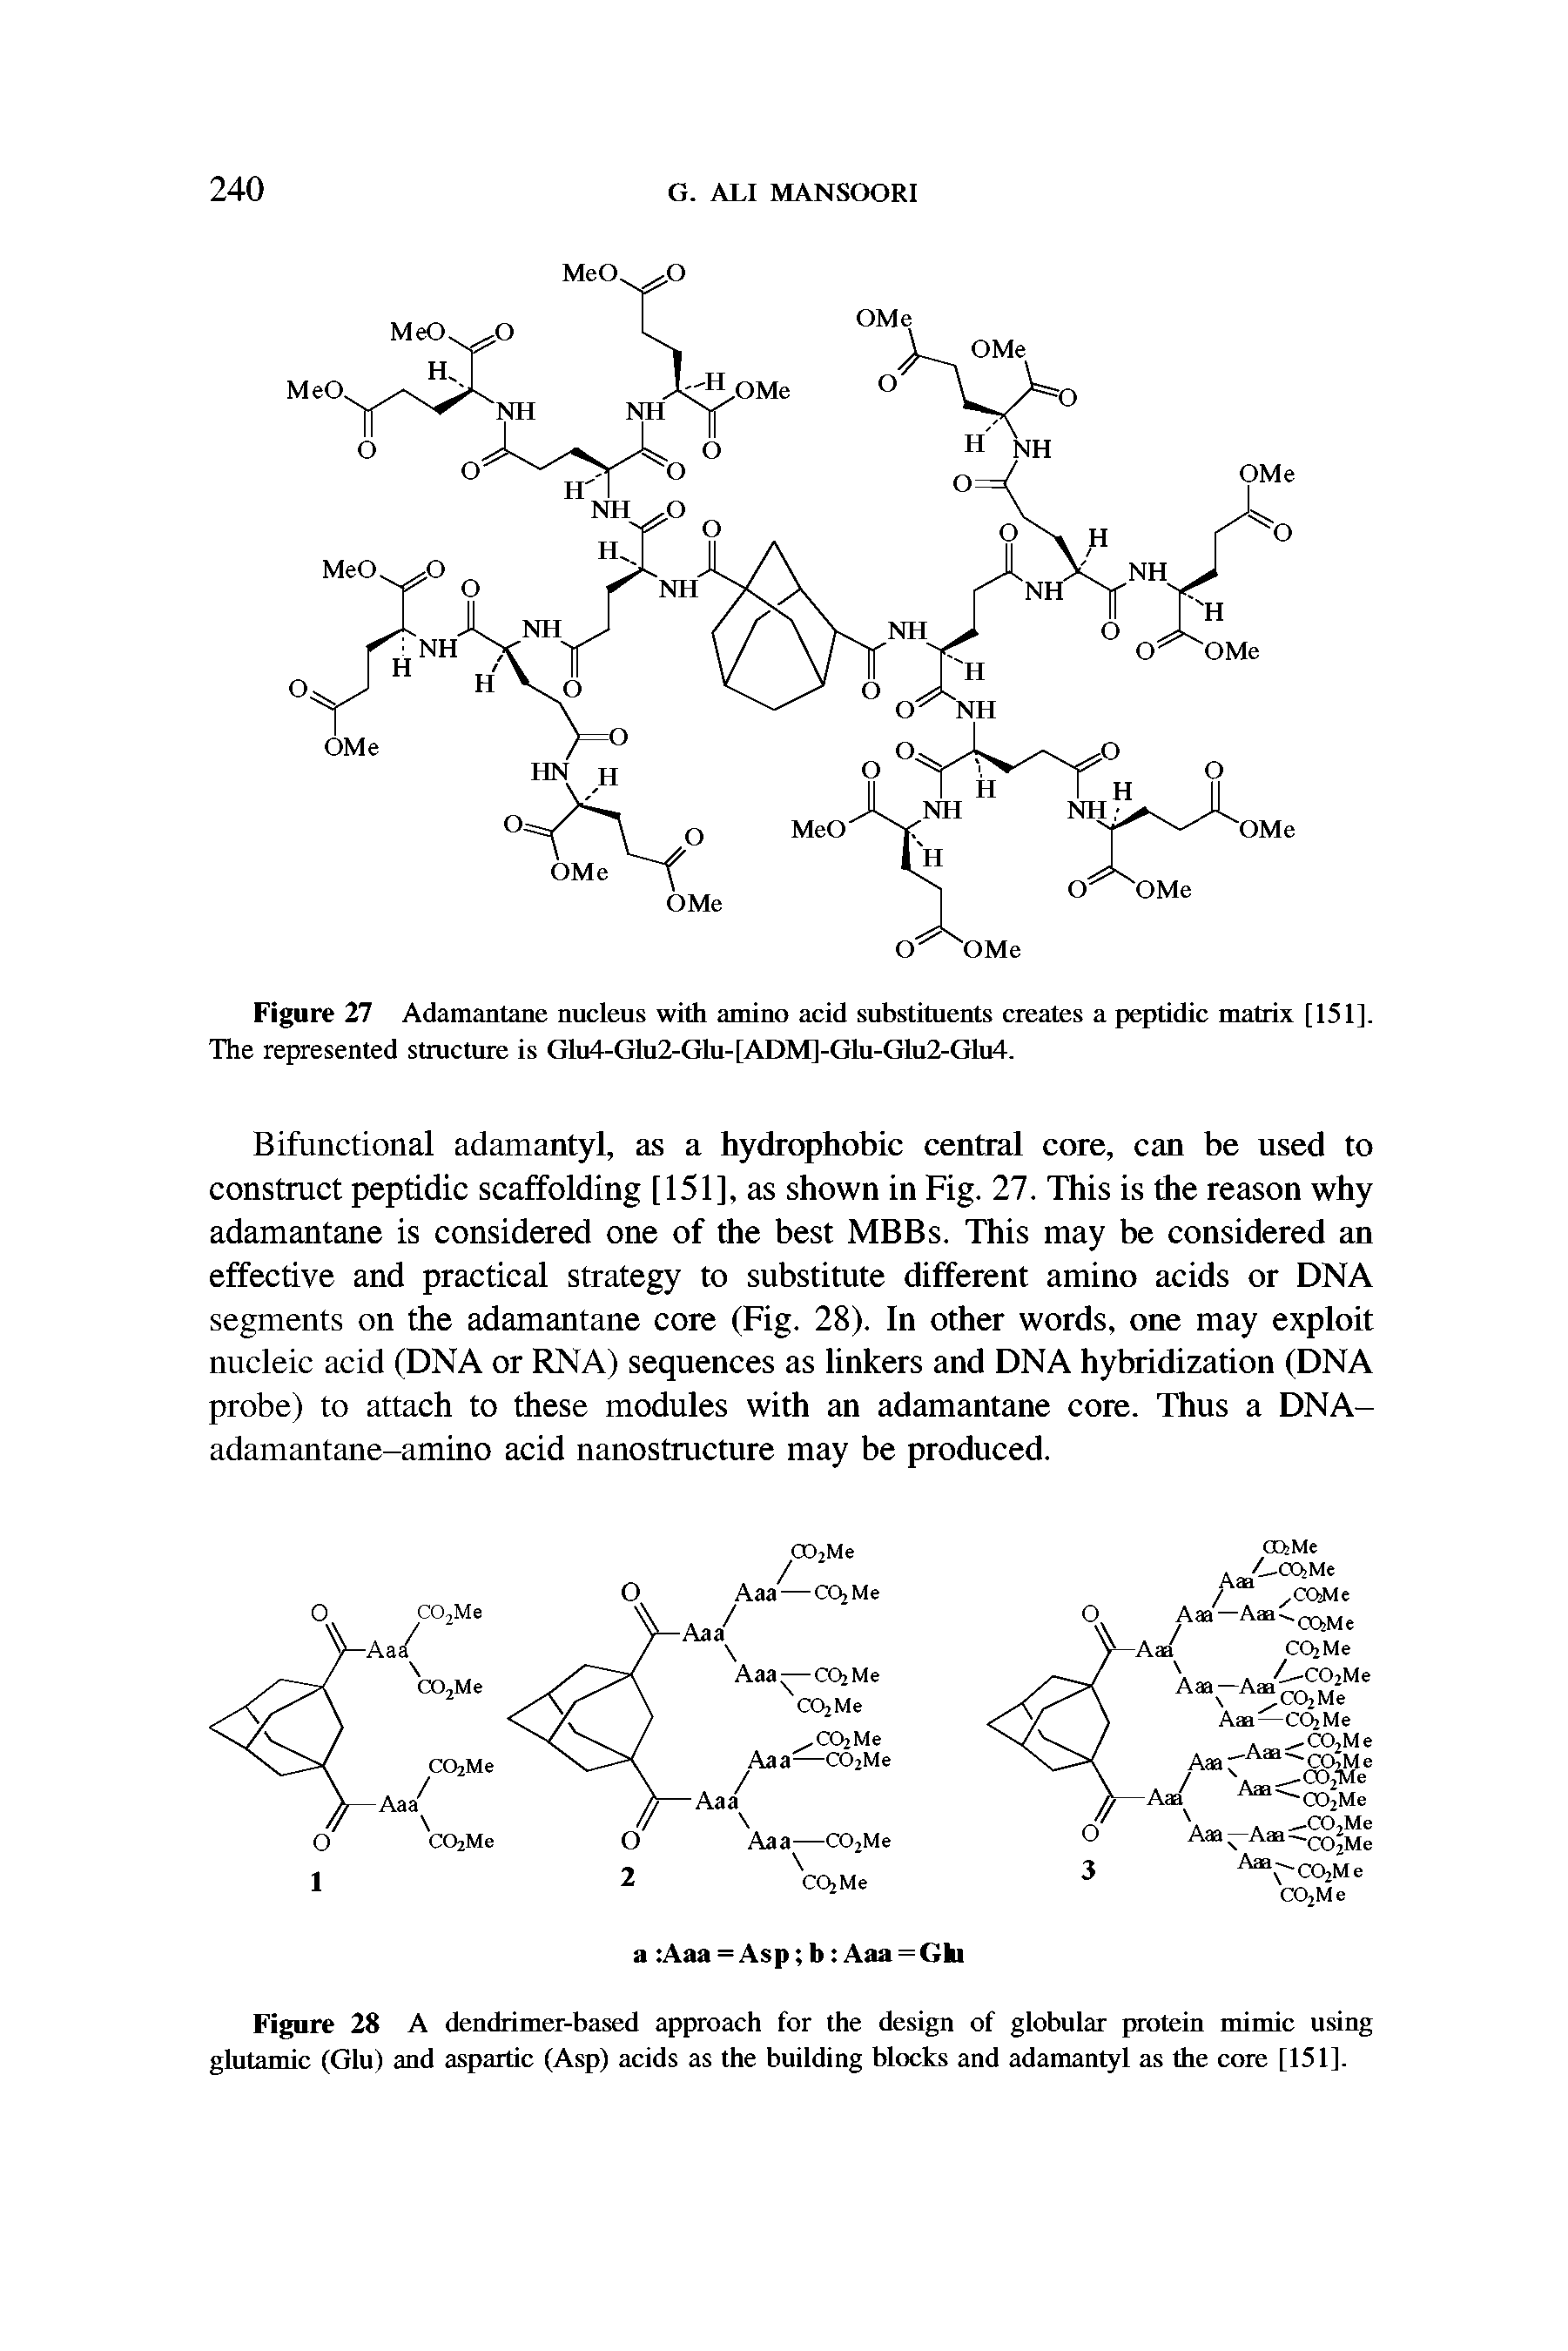 Figure 27 Adamantane nucleus with amino acid substituents creates a peptidic matrix [151], The represented structure is Glu4-Glu2-Glu-[ADM]-Glu-Glu2-Glu4.